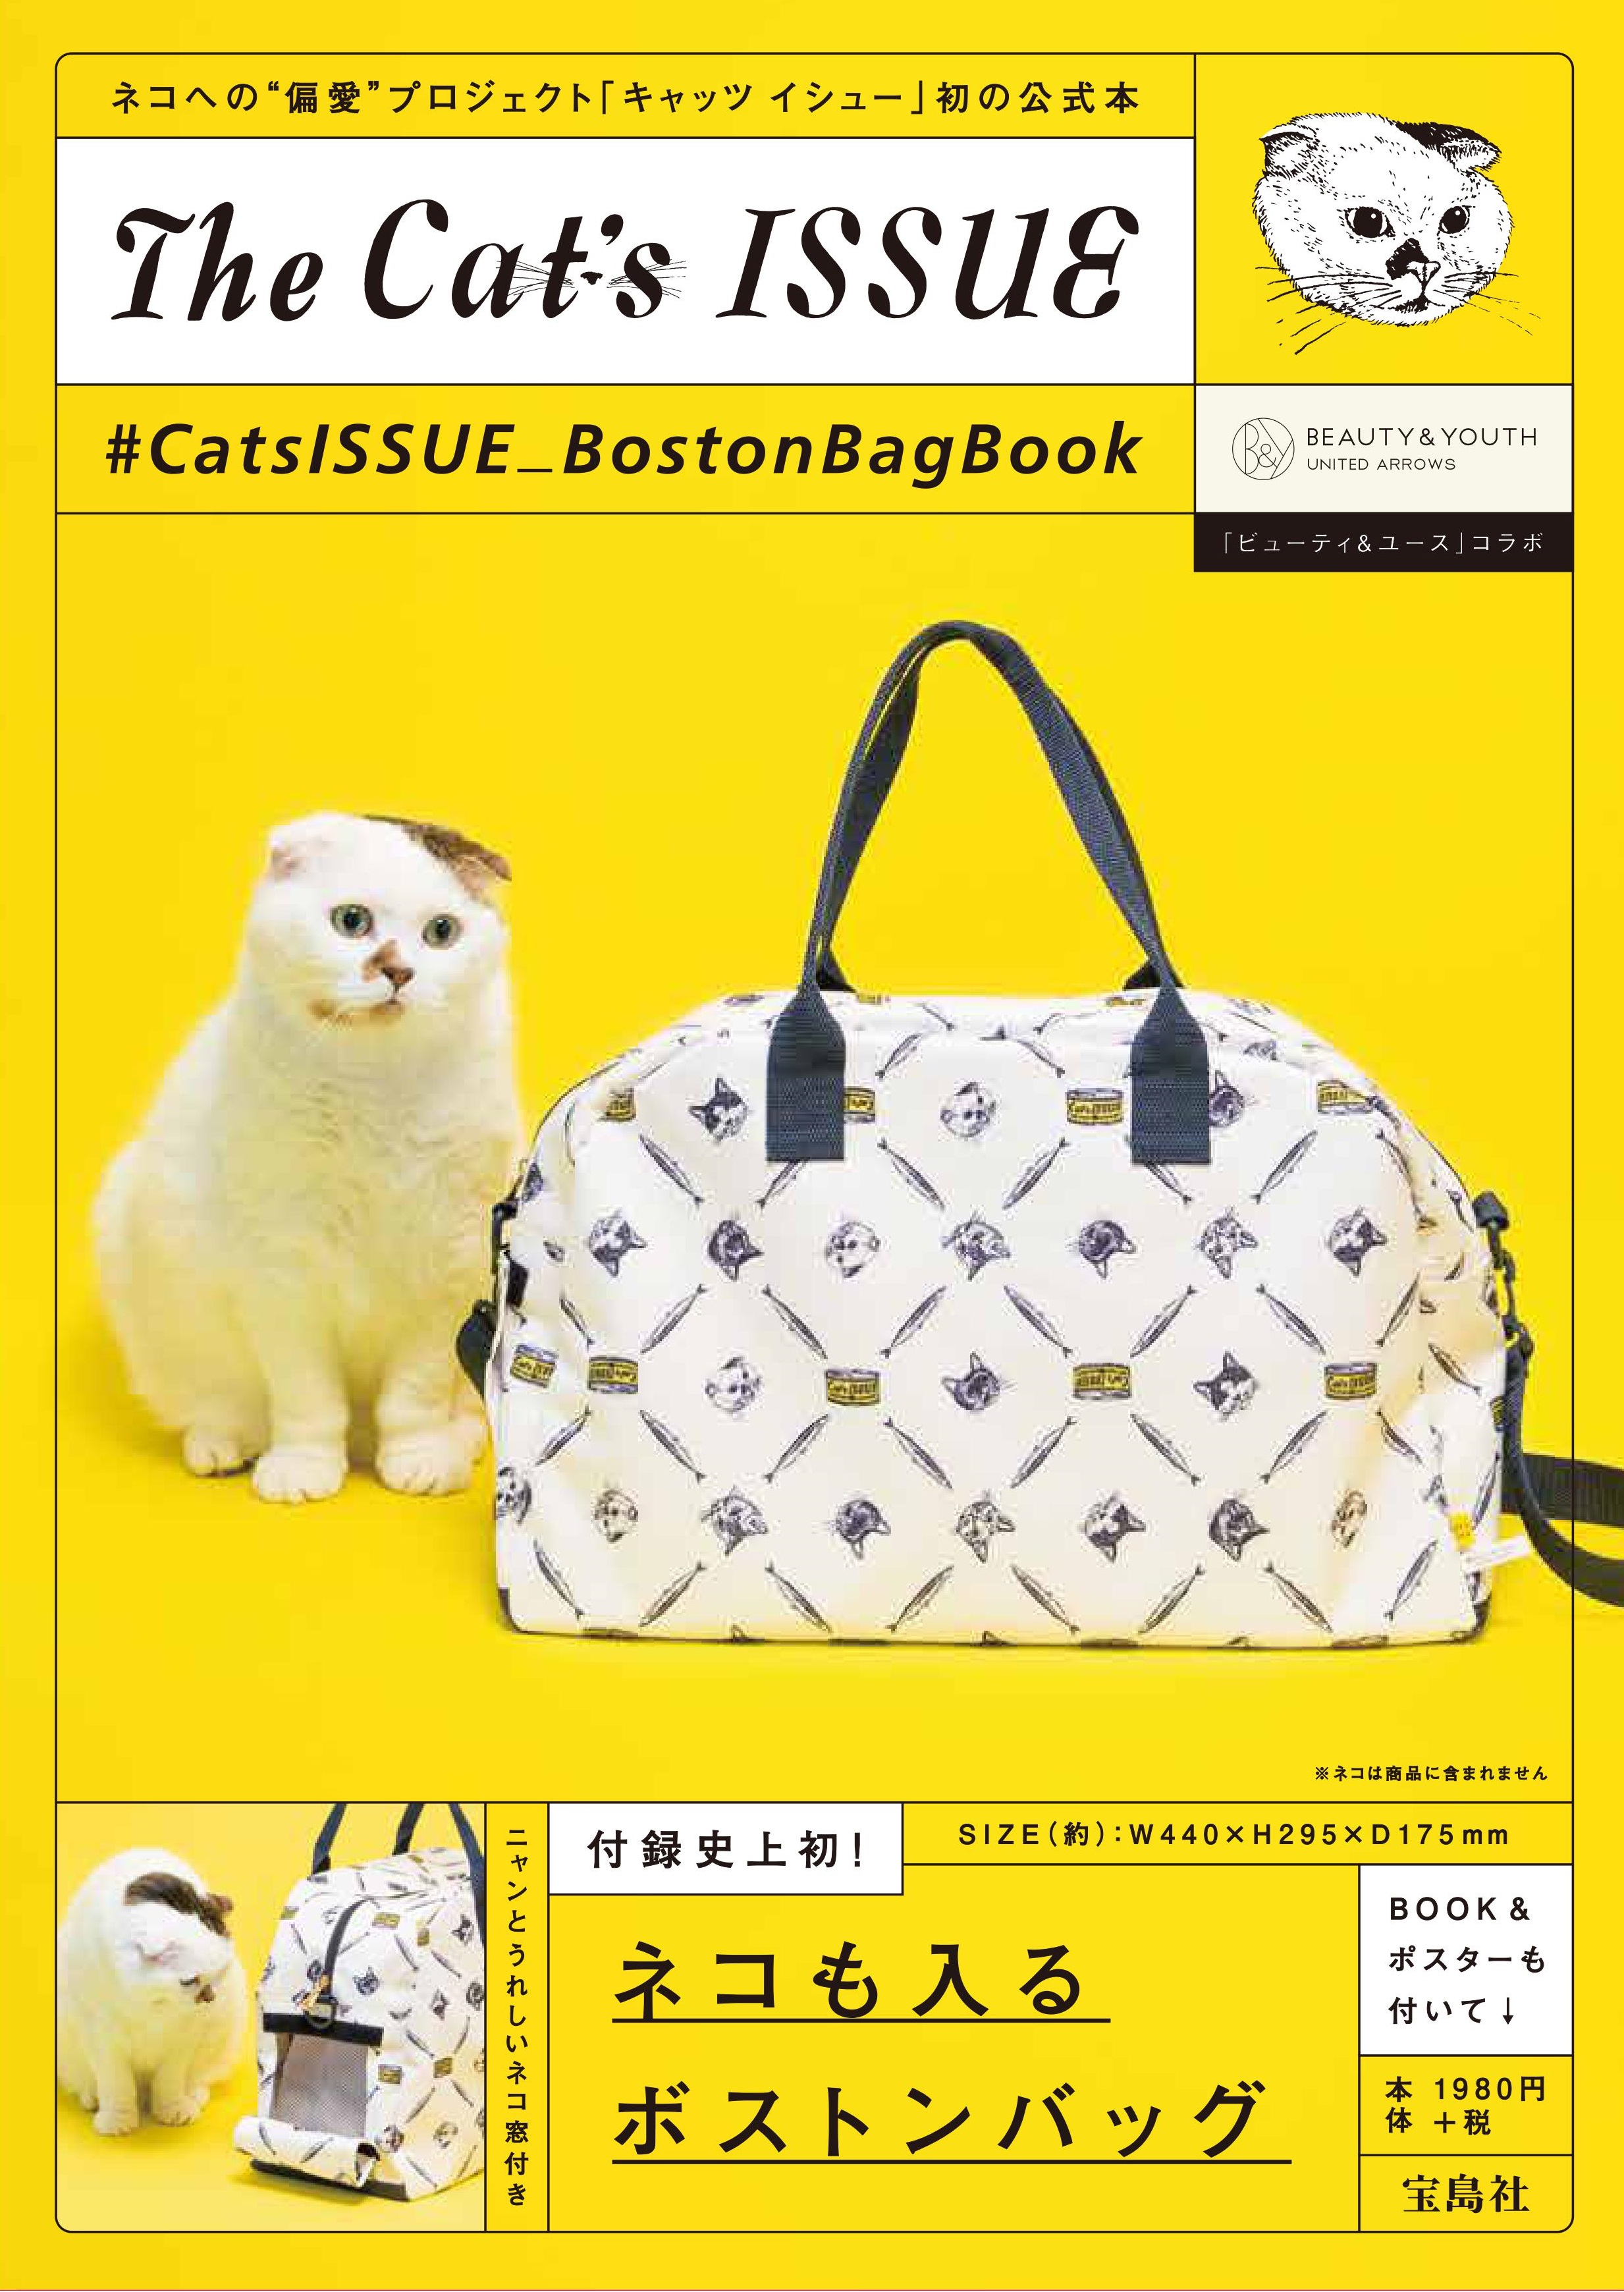 付録史上初 ネコも入れるボストンバッグ ネコへの偏愛プロジェクト Cat S Issue 初のオフィシャルブック 7 22 土 発売 株式会社 宝島社のプレスリリース